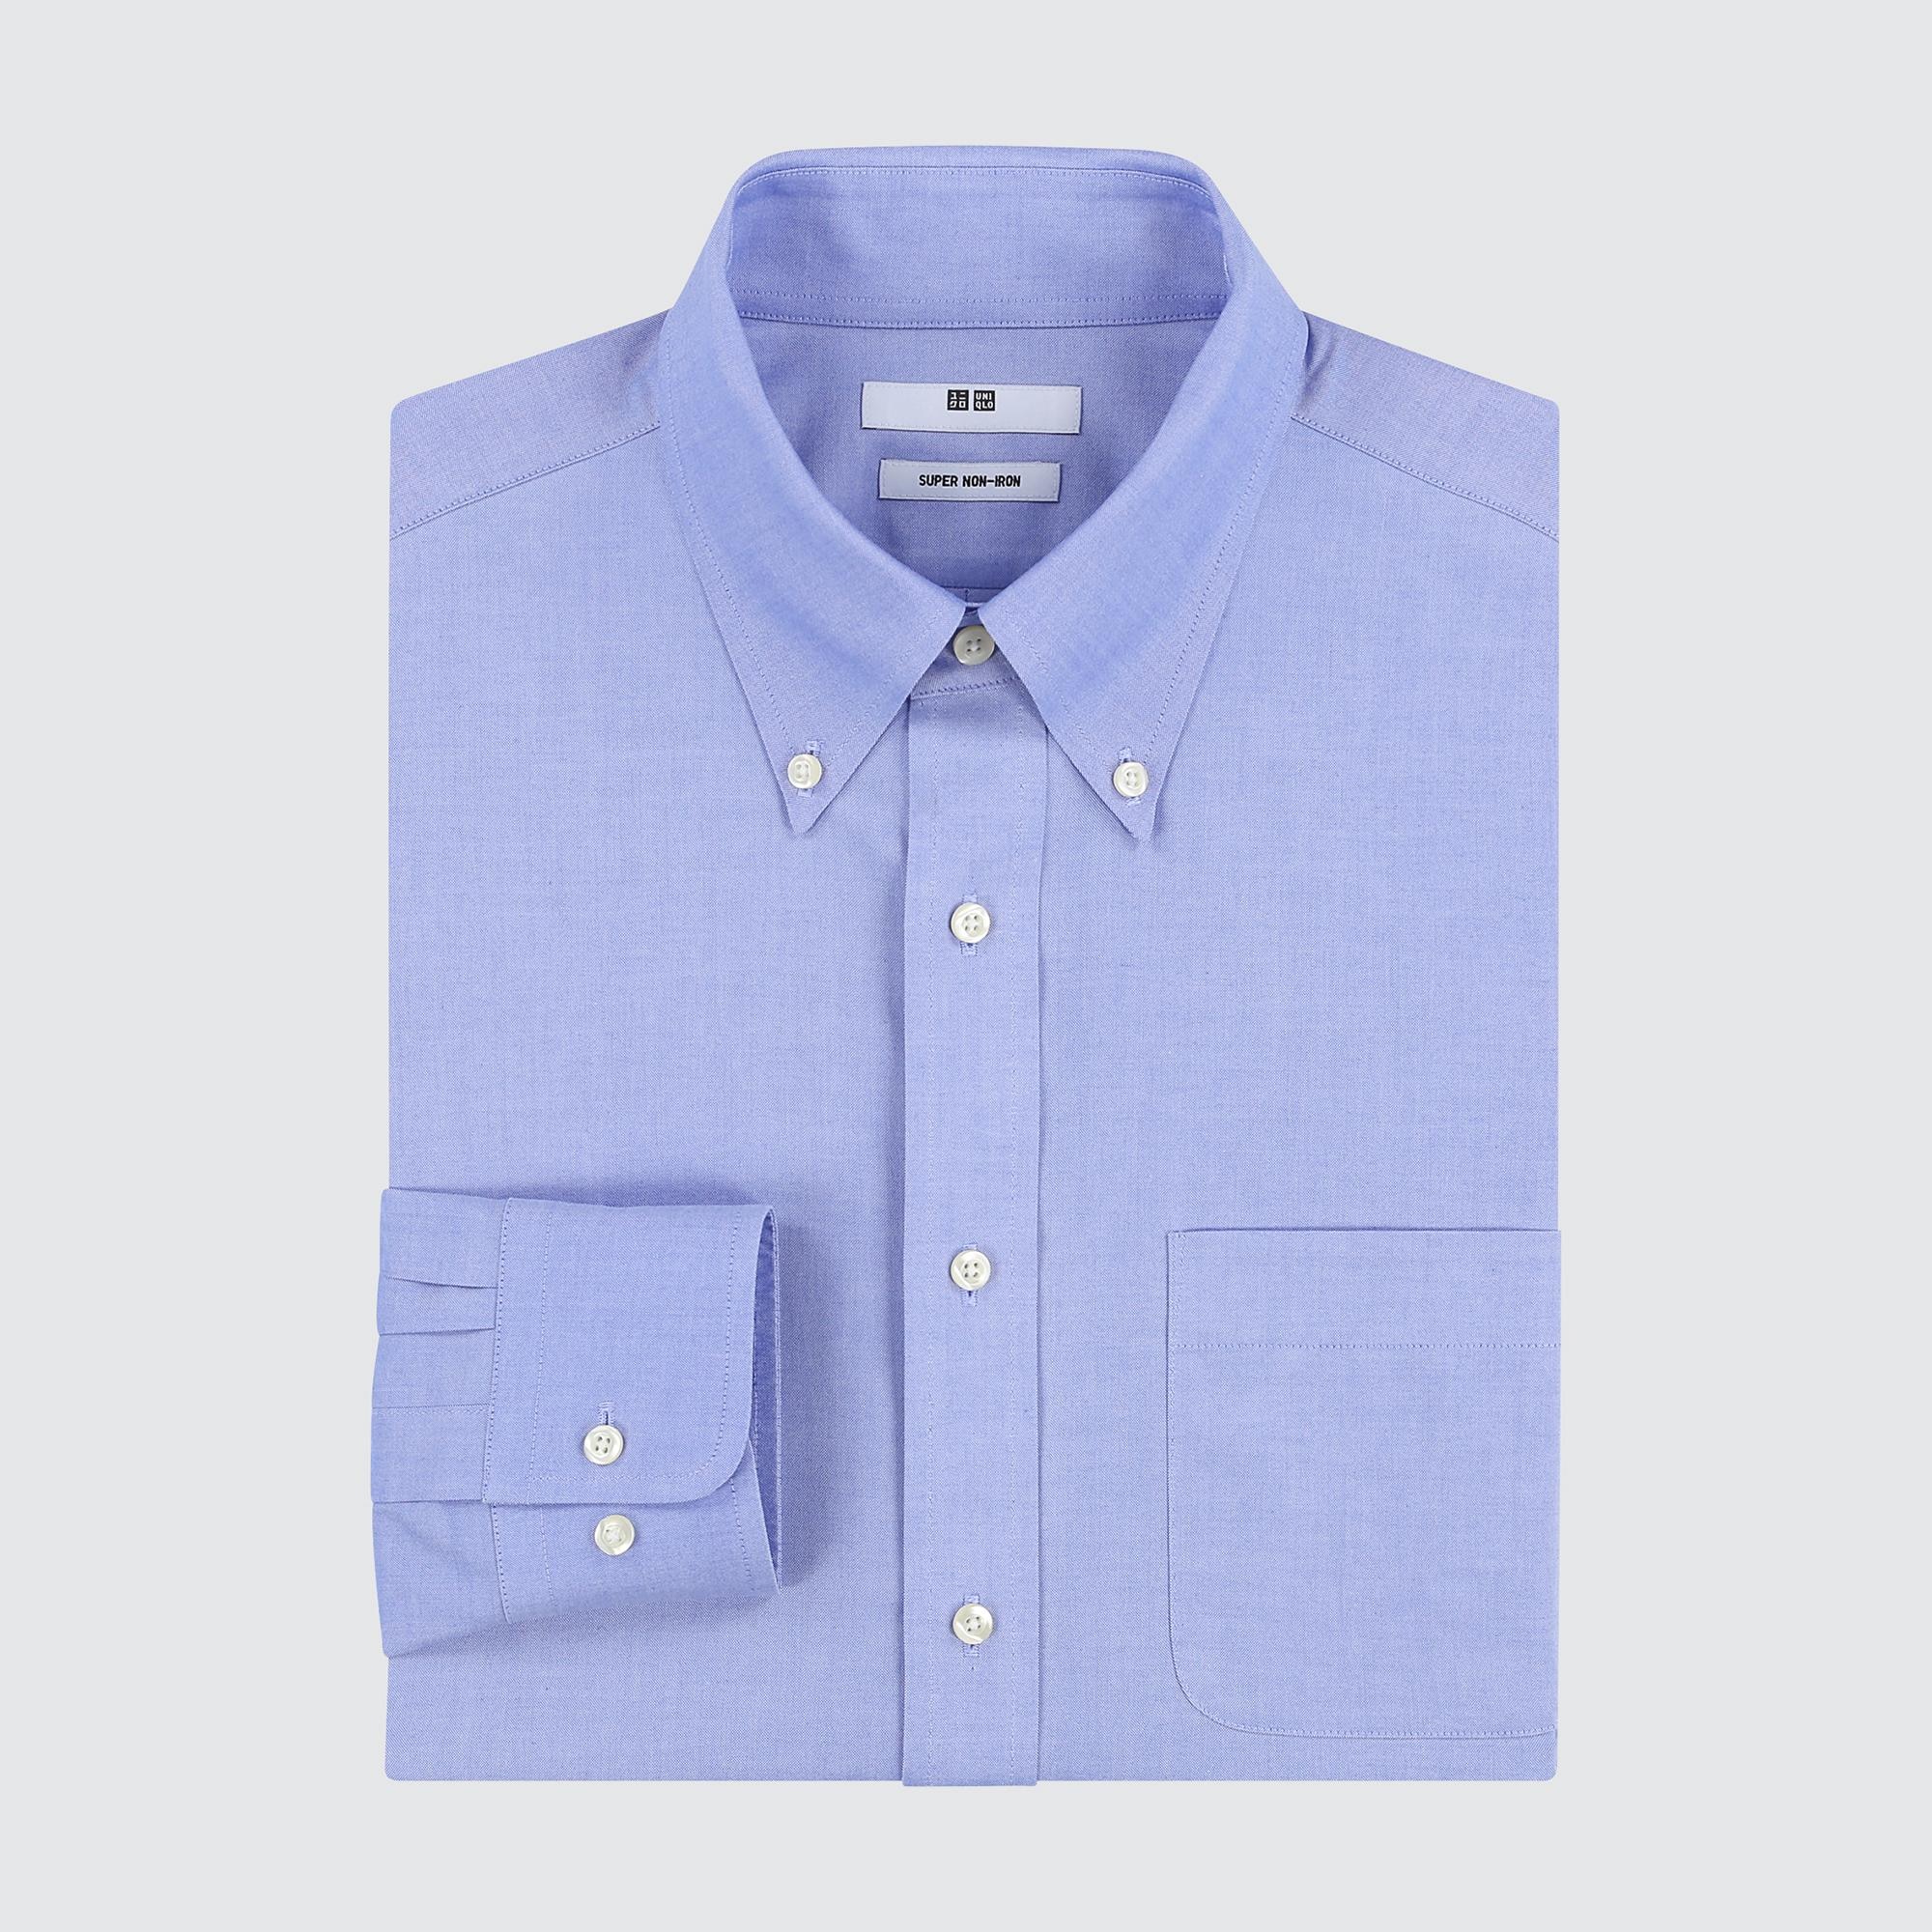 Yシャツ【新品】UNIQLO ボタンダウンシャツ4点セット　Lサイズ